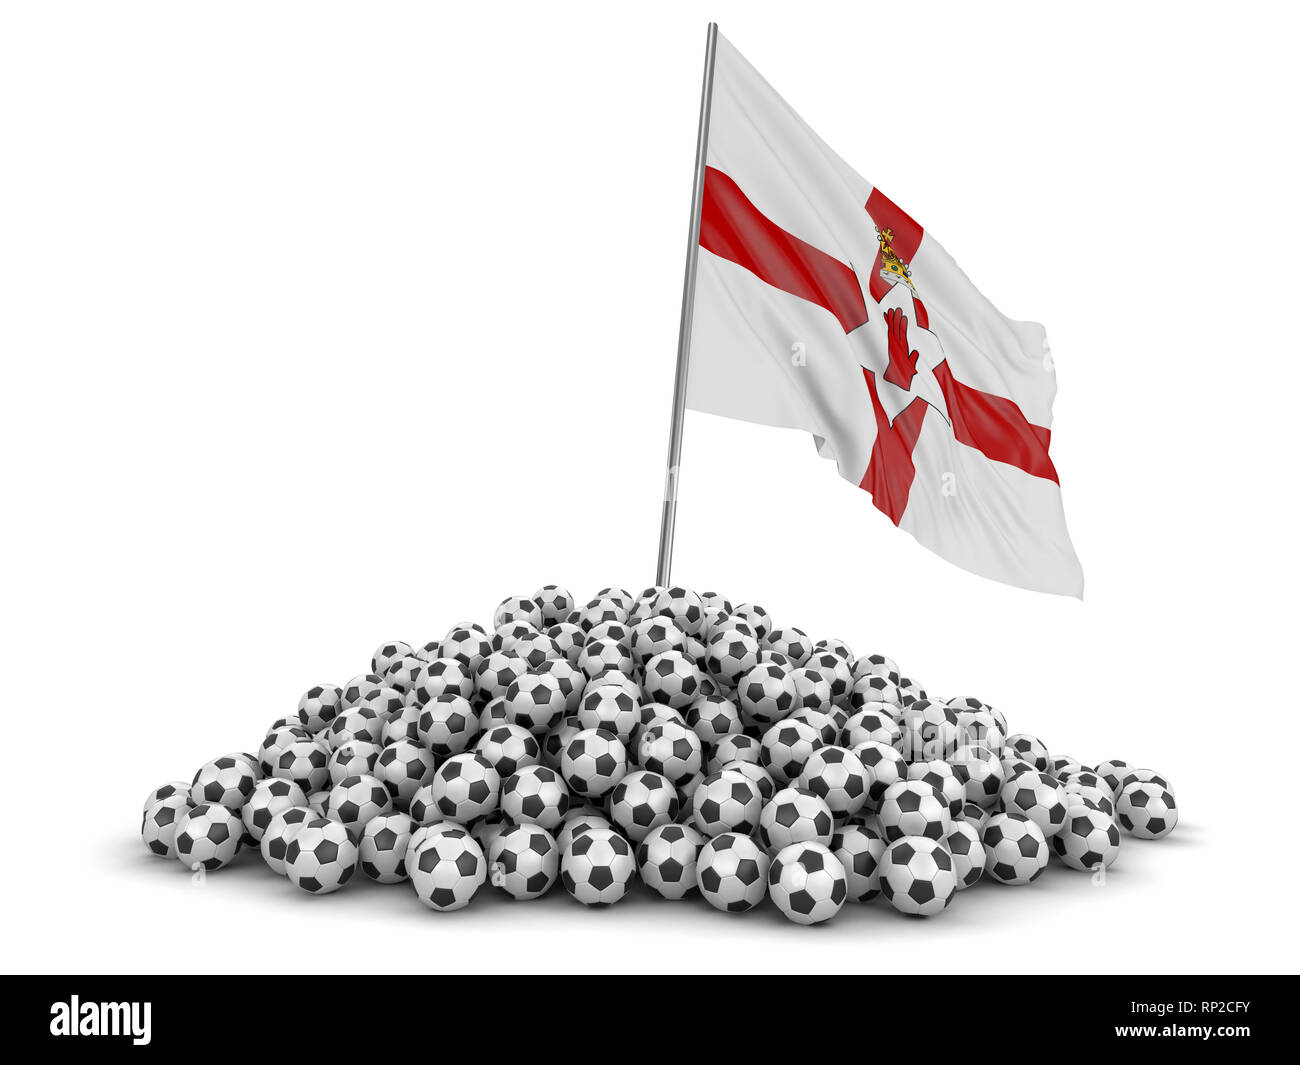 Pila di palloni da calcio e bandiera. Immagine con tracciato di ritaglio Foto Stock